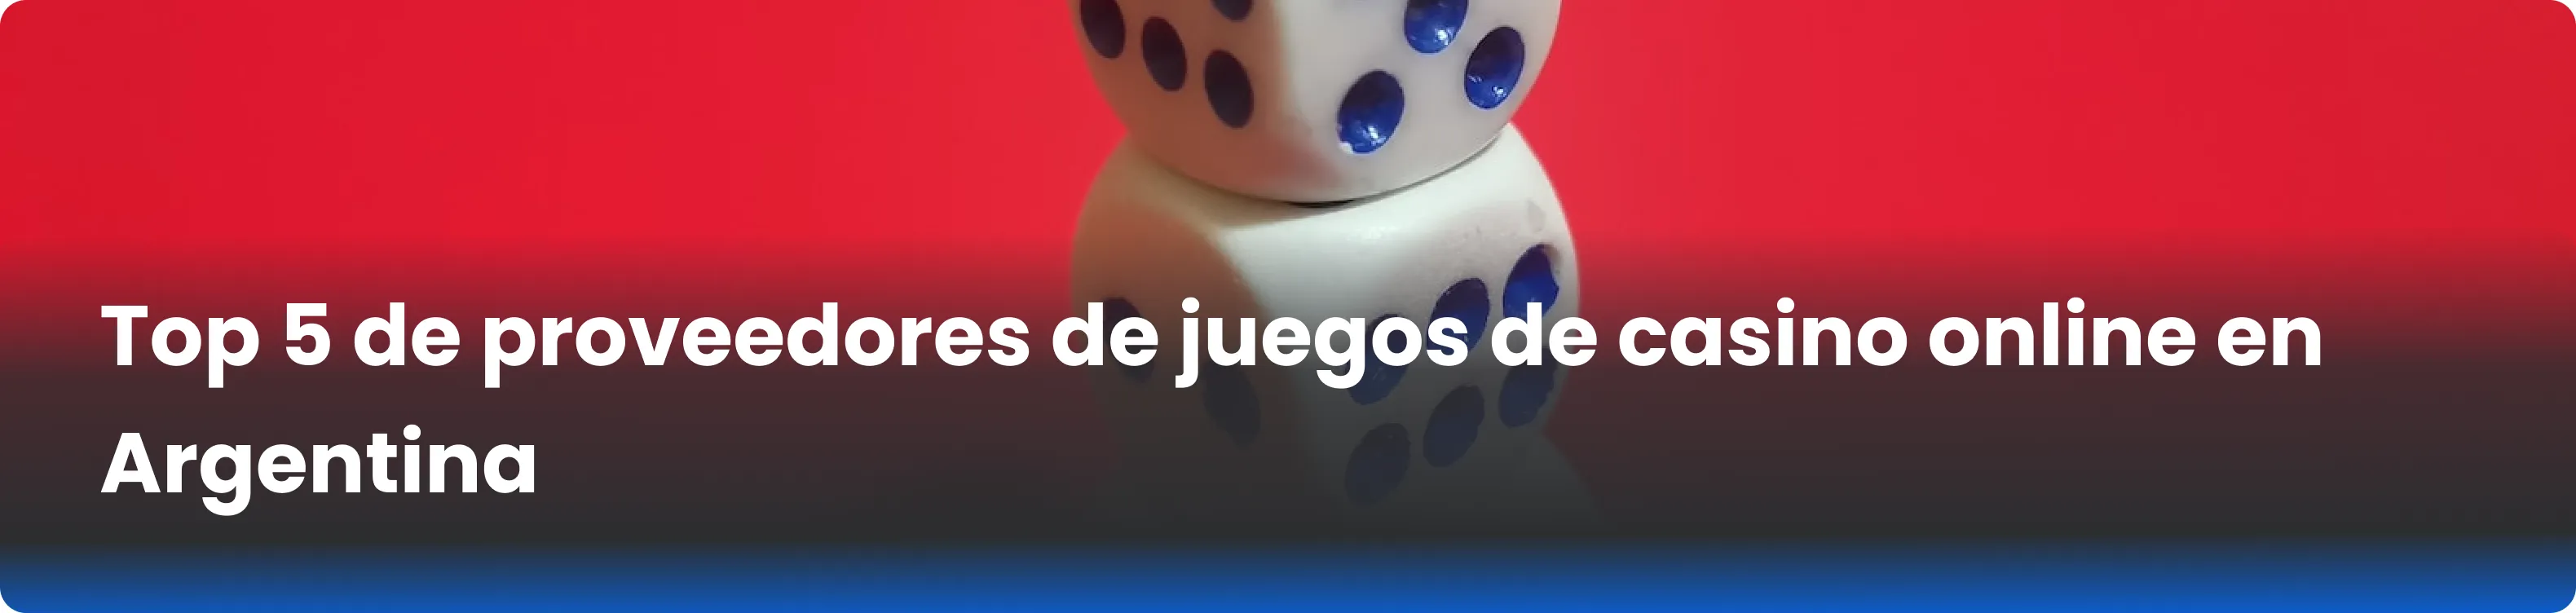 Top 5 de proveedores de juegos de casino online en Argentina 